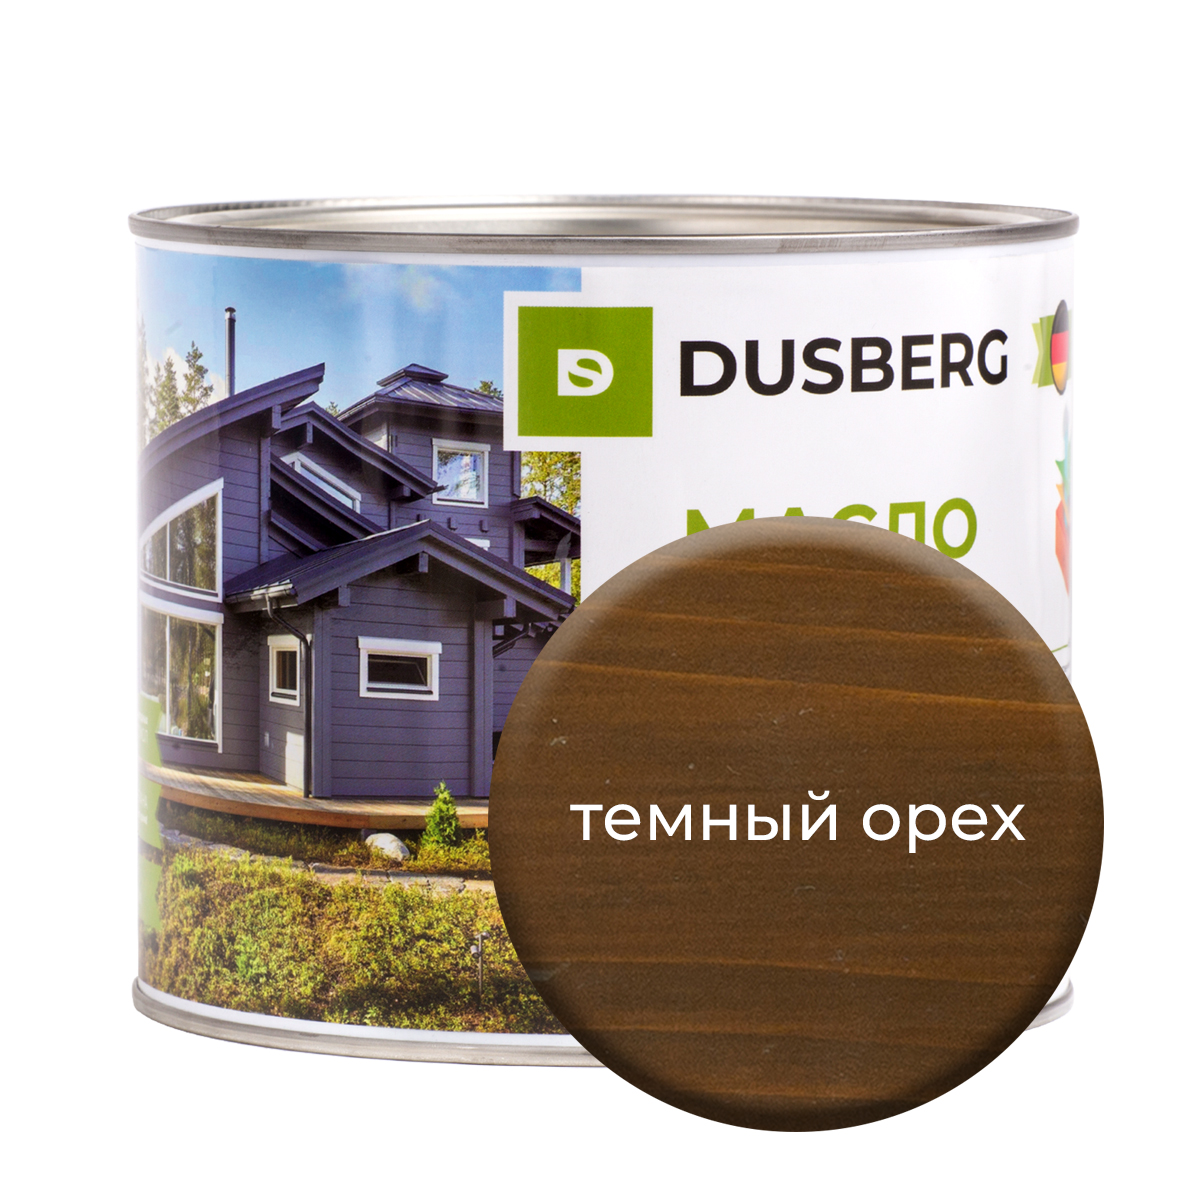 Масло Dusberg для дерева на бесцветной основе, 2 л Темный орех краска dusberg для дерева бесцветная база 750 мл темный желто коричневый